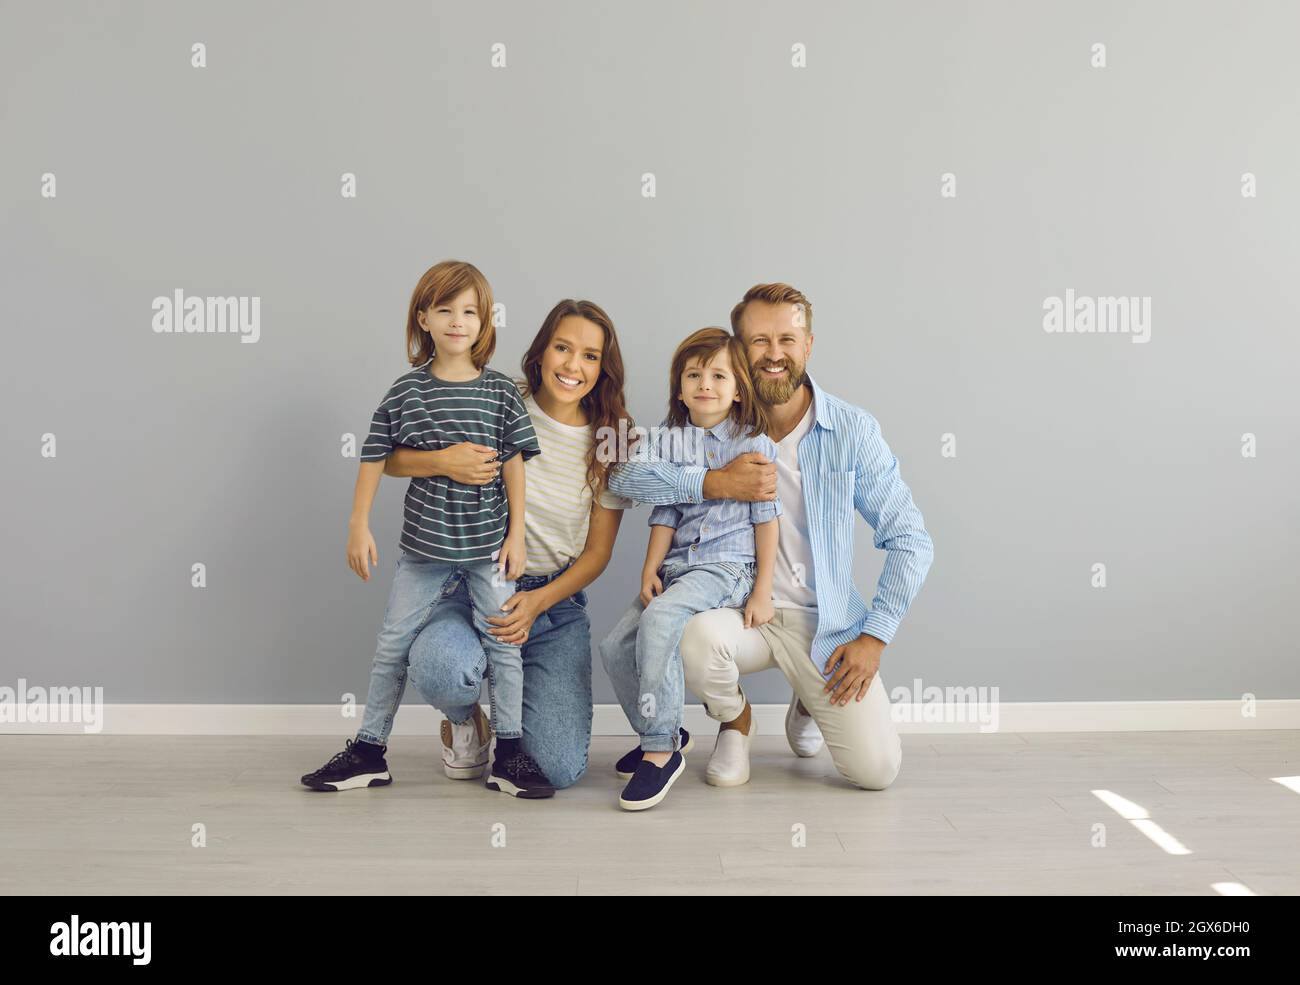 Porträt von glücklicher Mutter, Vater und Kindern in lässiger Kleidung lächelnd und Blick auf die Kamera Stockfoto